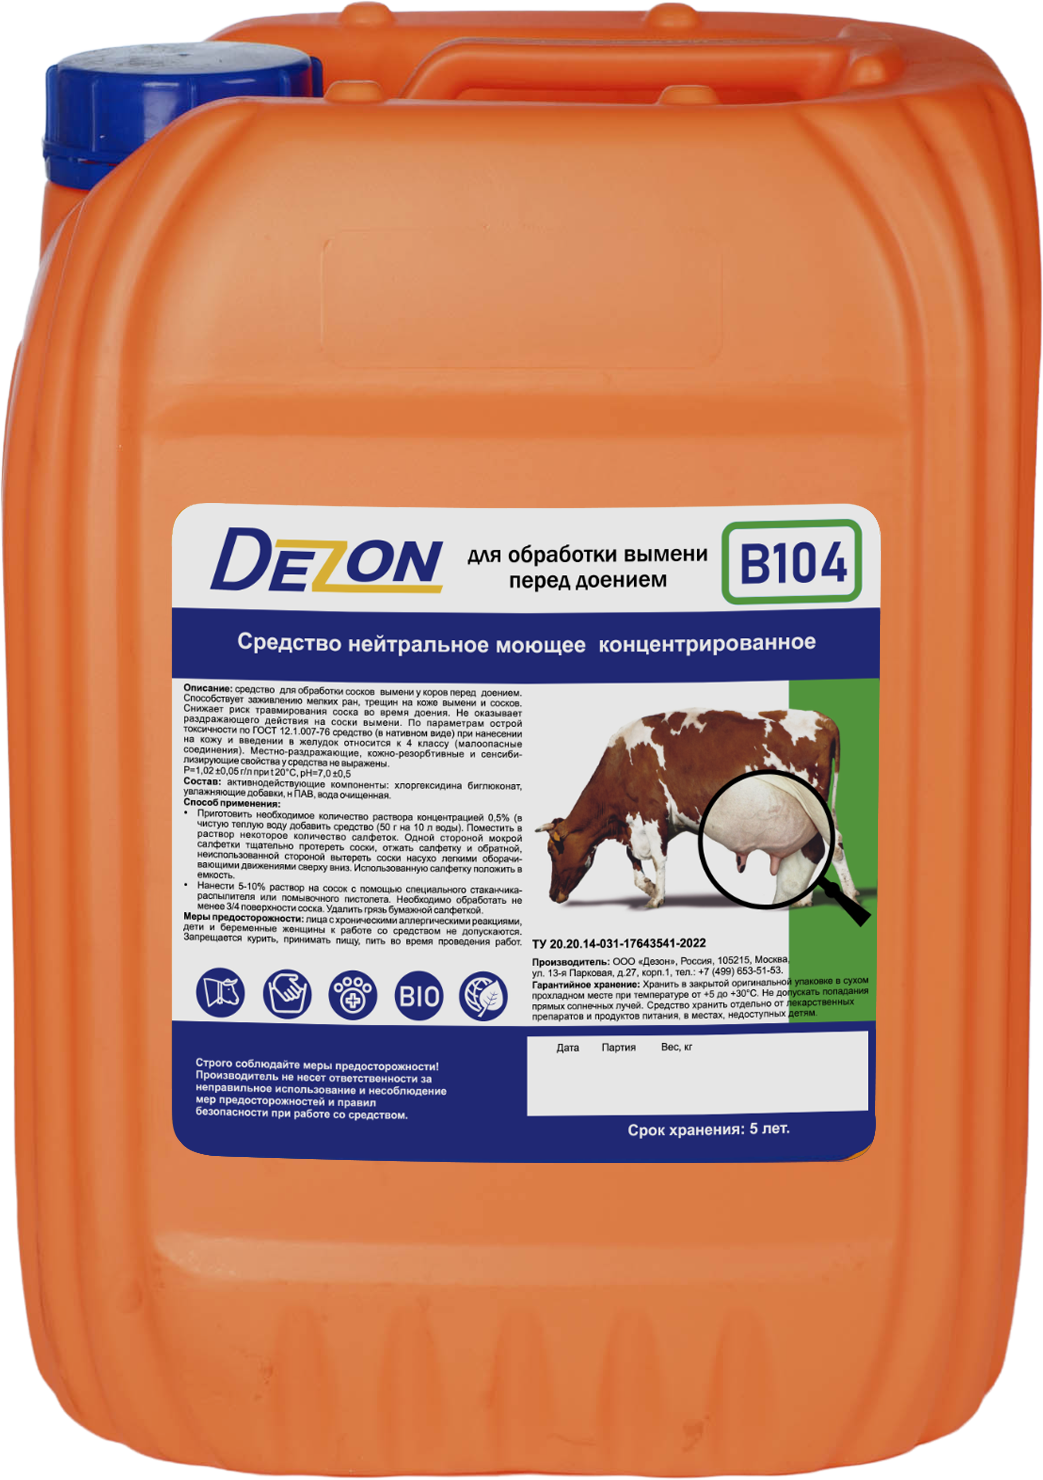 B104 (средство нейтральное моющее, концентрированное для обработки сосков вымени у коров перед доением.)